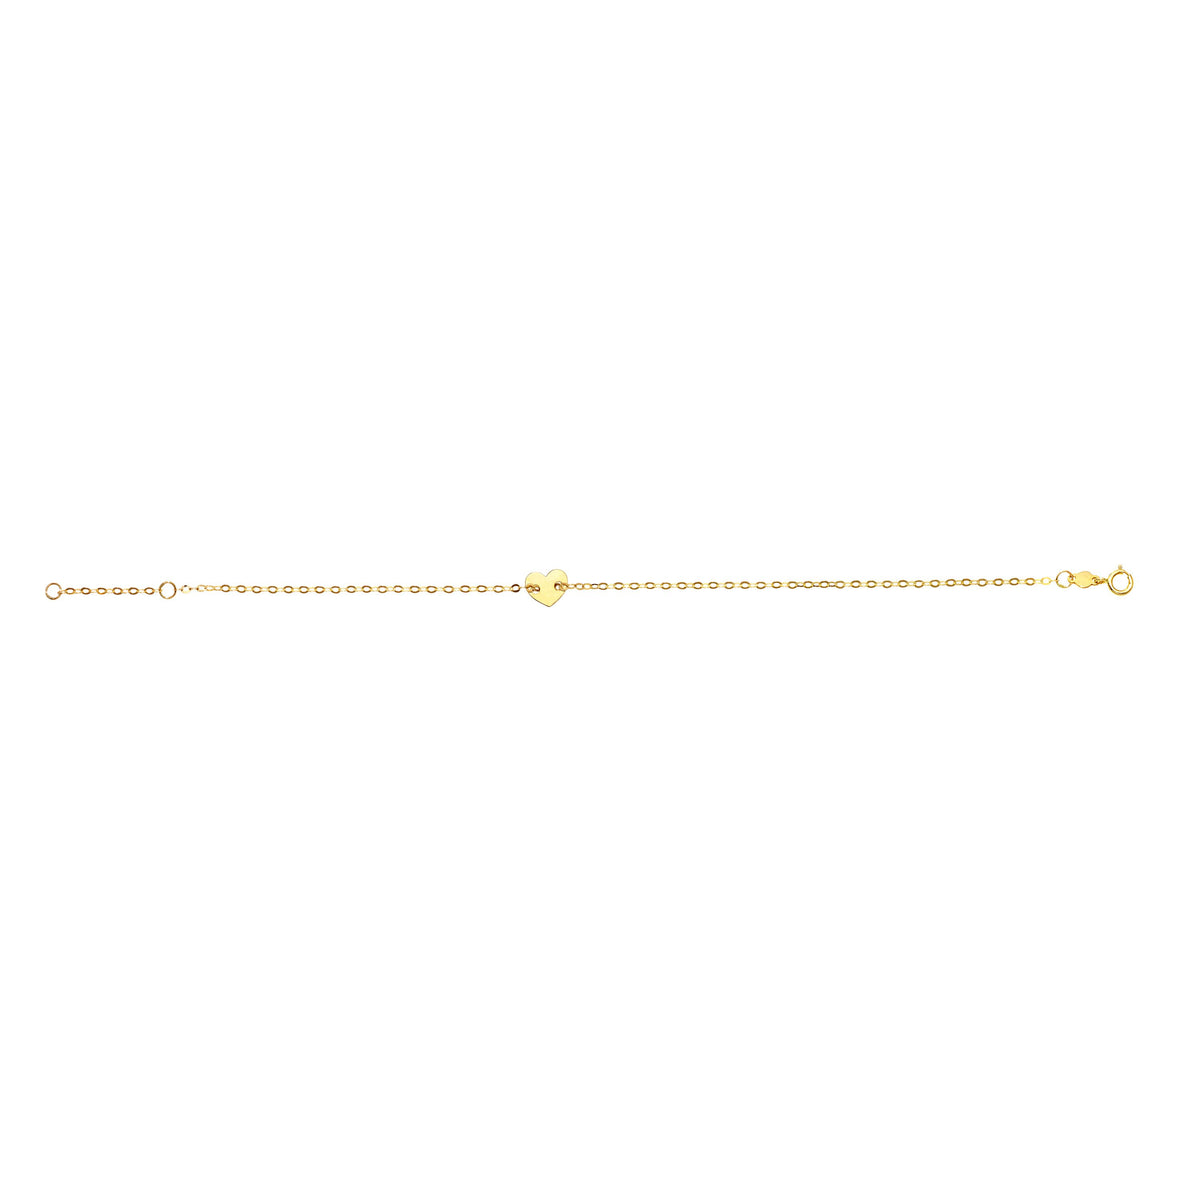 14k Yellow Gold Heart Charm Fancy Bracelet, 7" fine designer jewelry for men and women